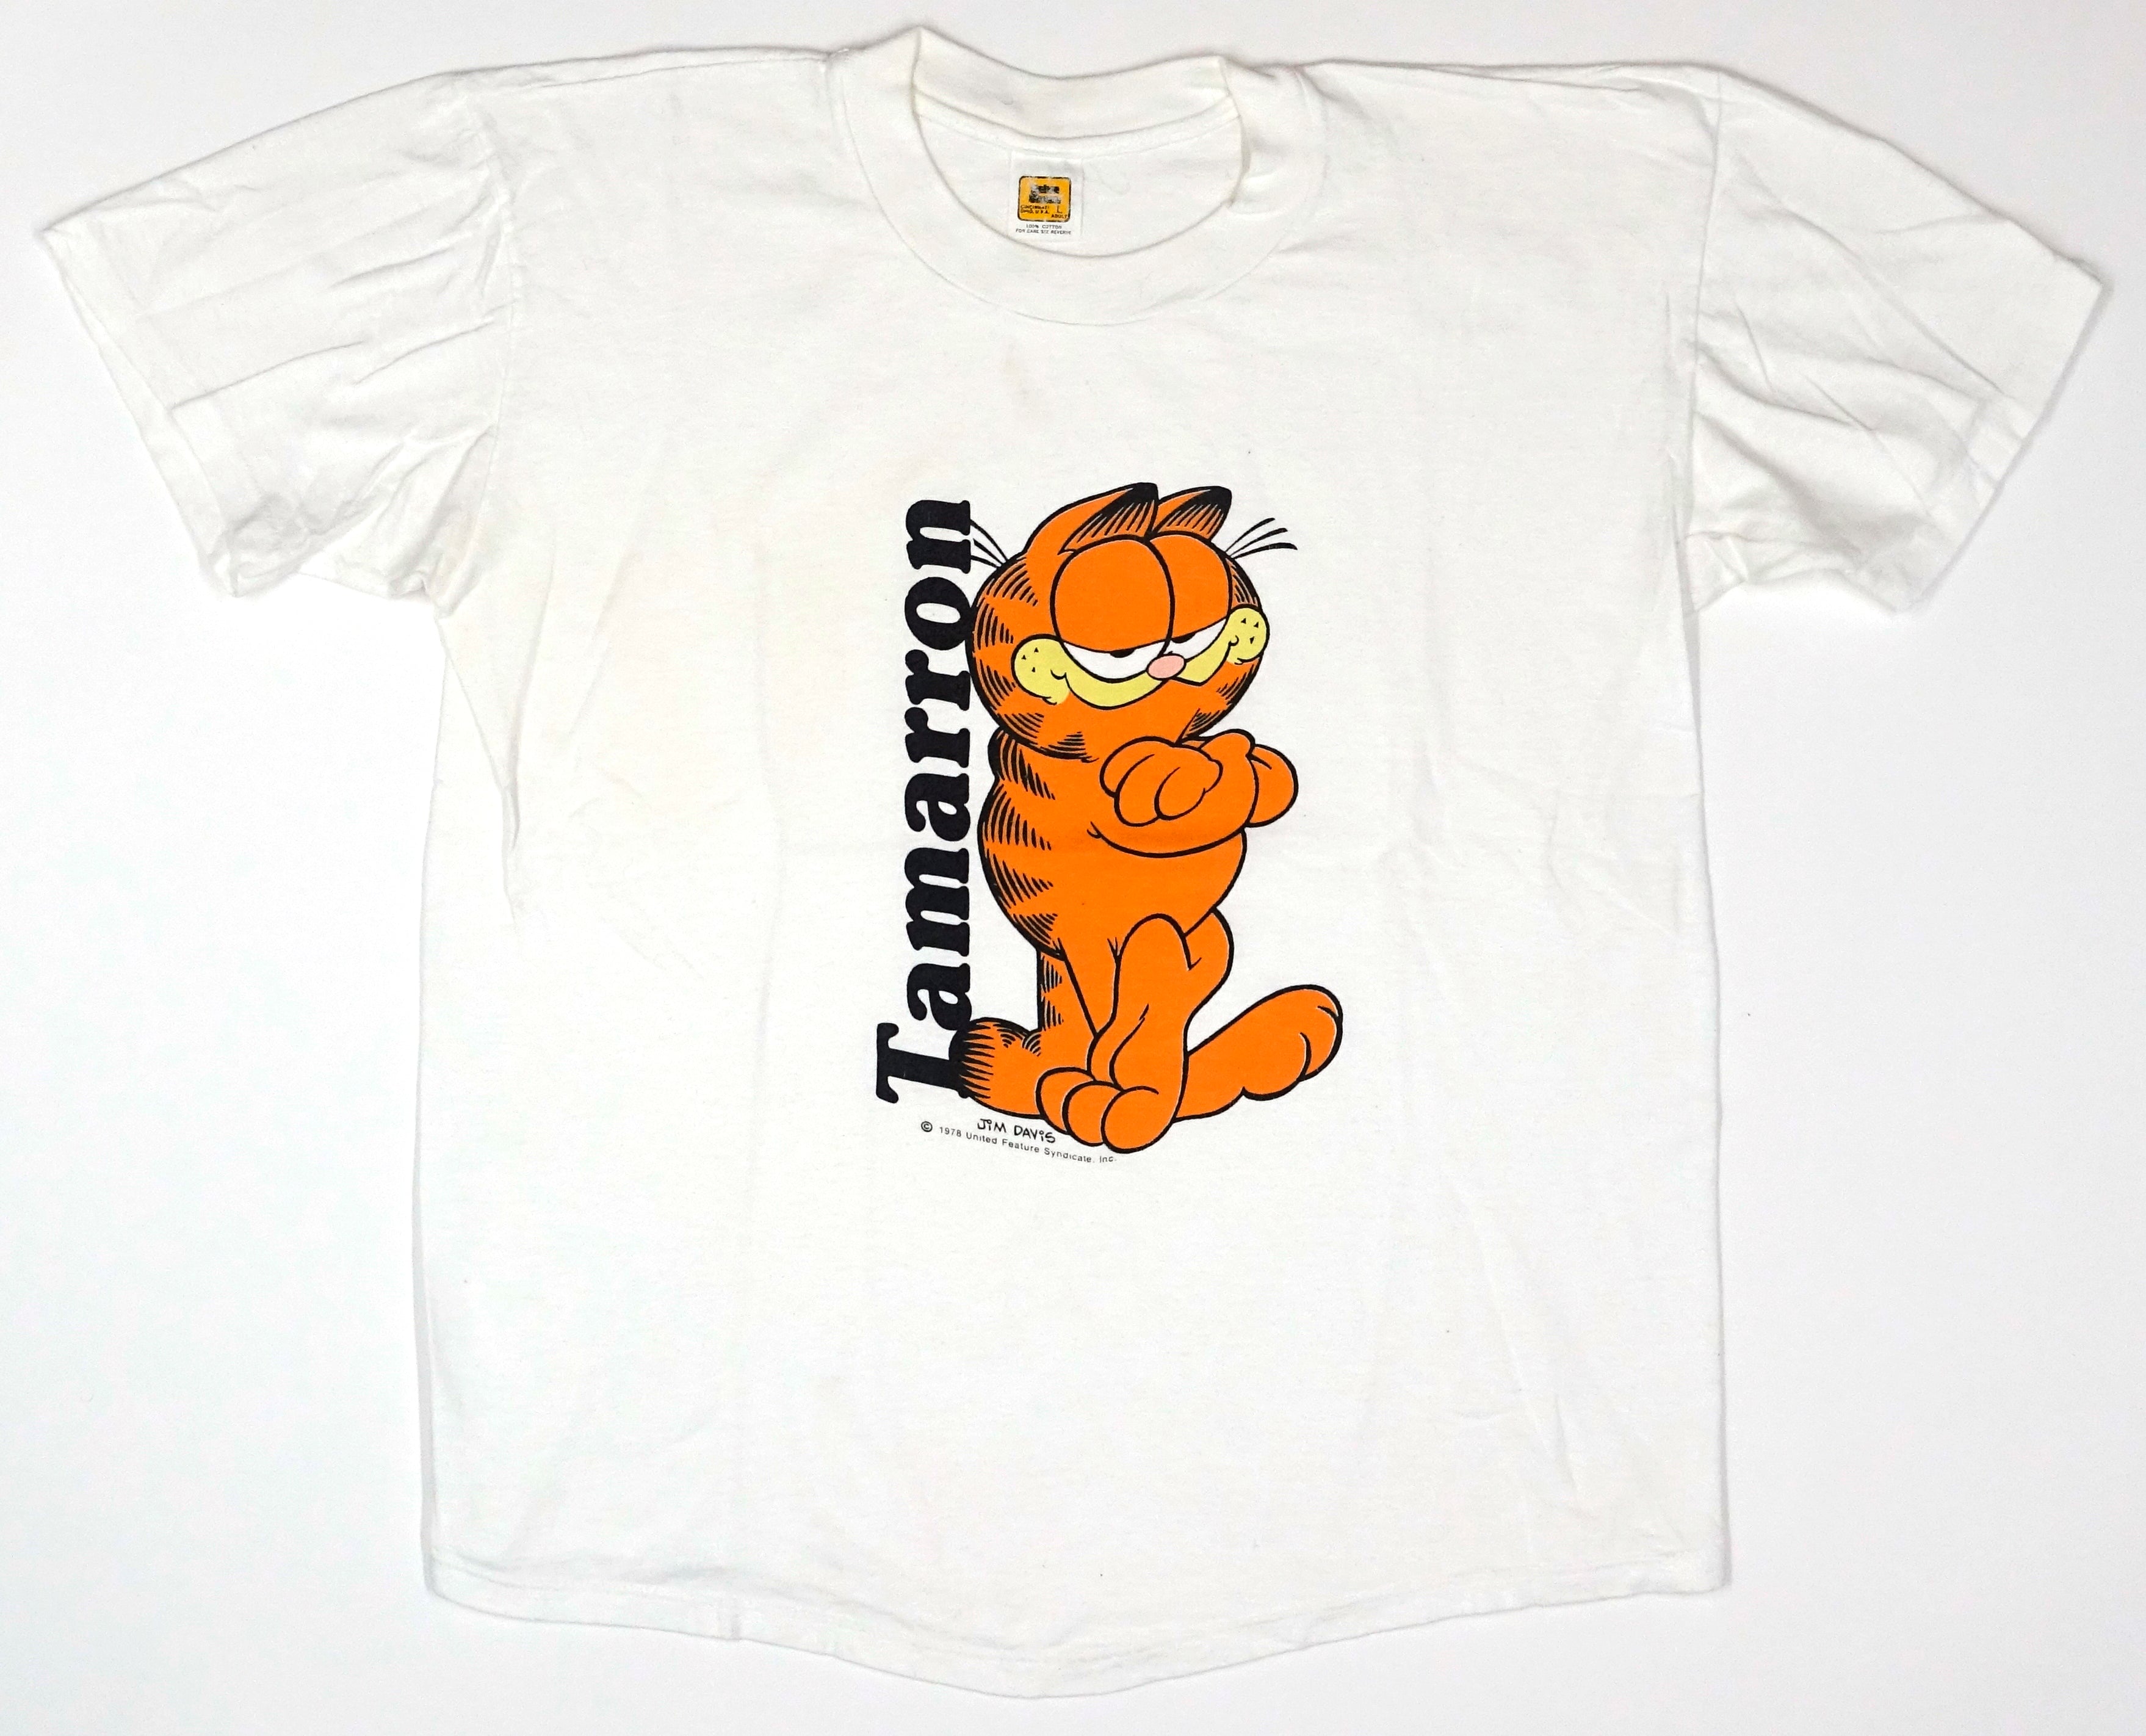 Garfield - Tamarraon ©1978 Shirt Size Large